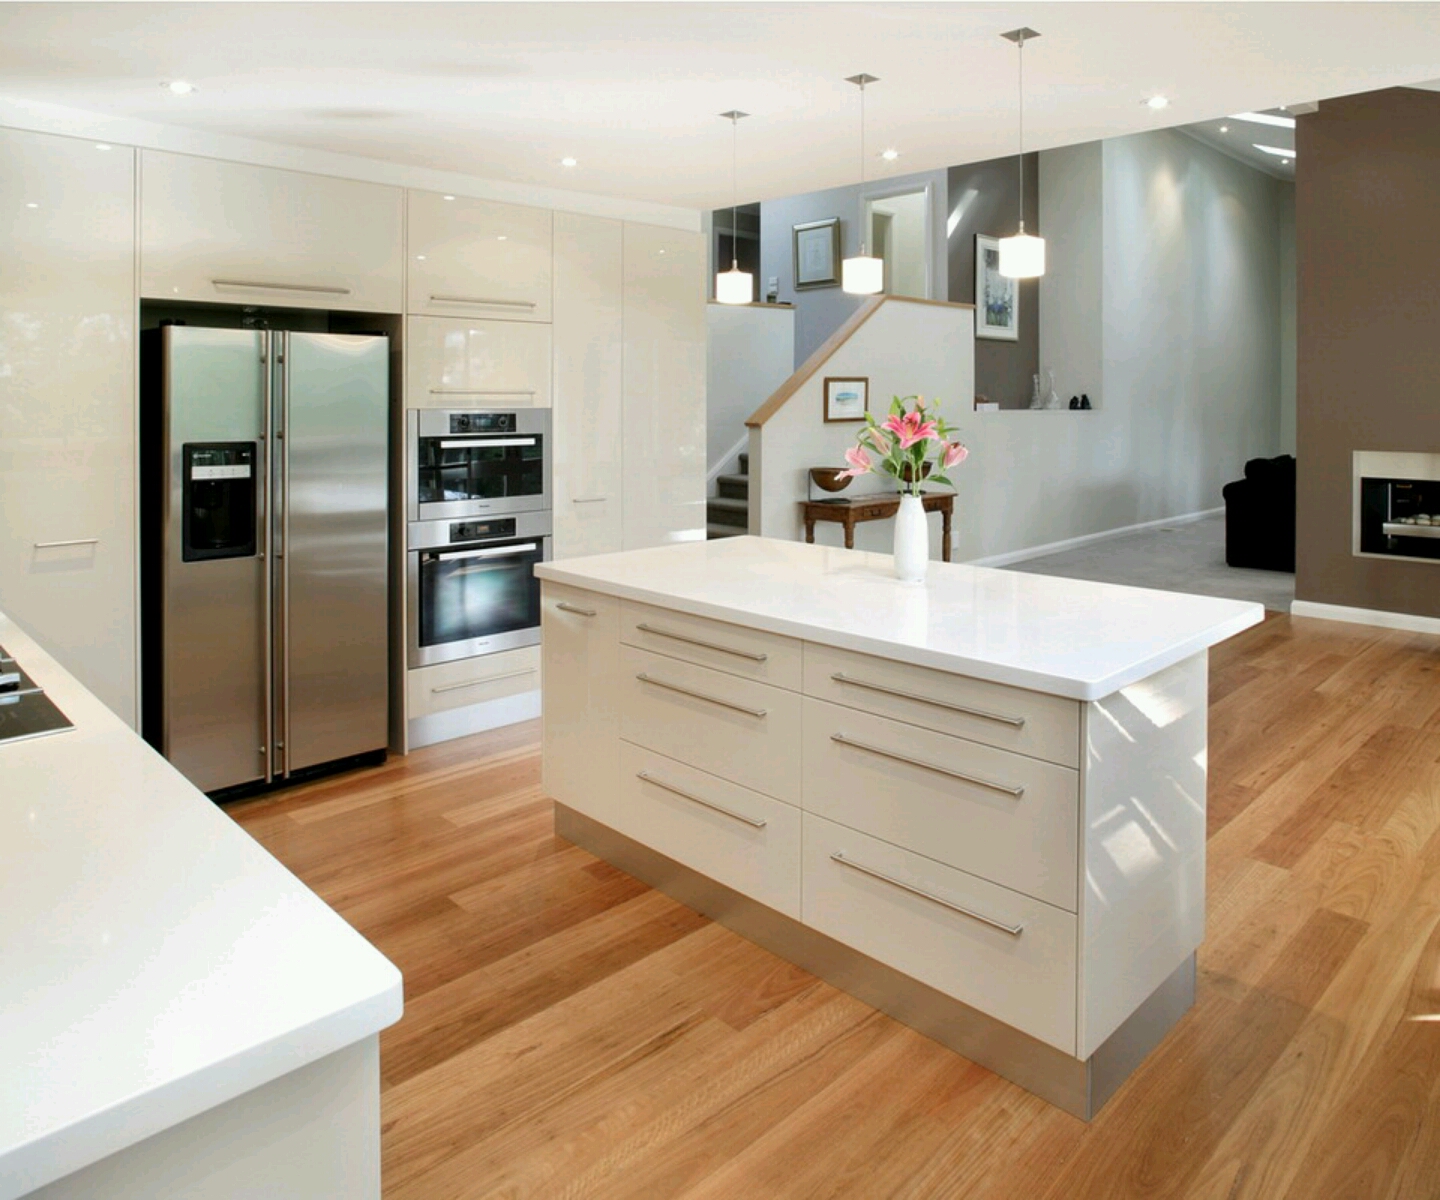 Luxury kitchen  modern  kitchen  cabinets designs  